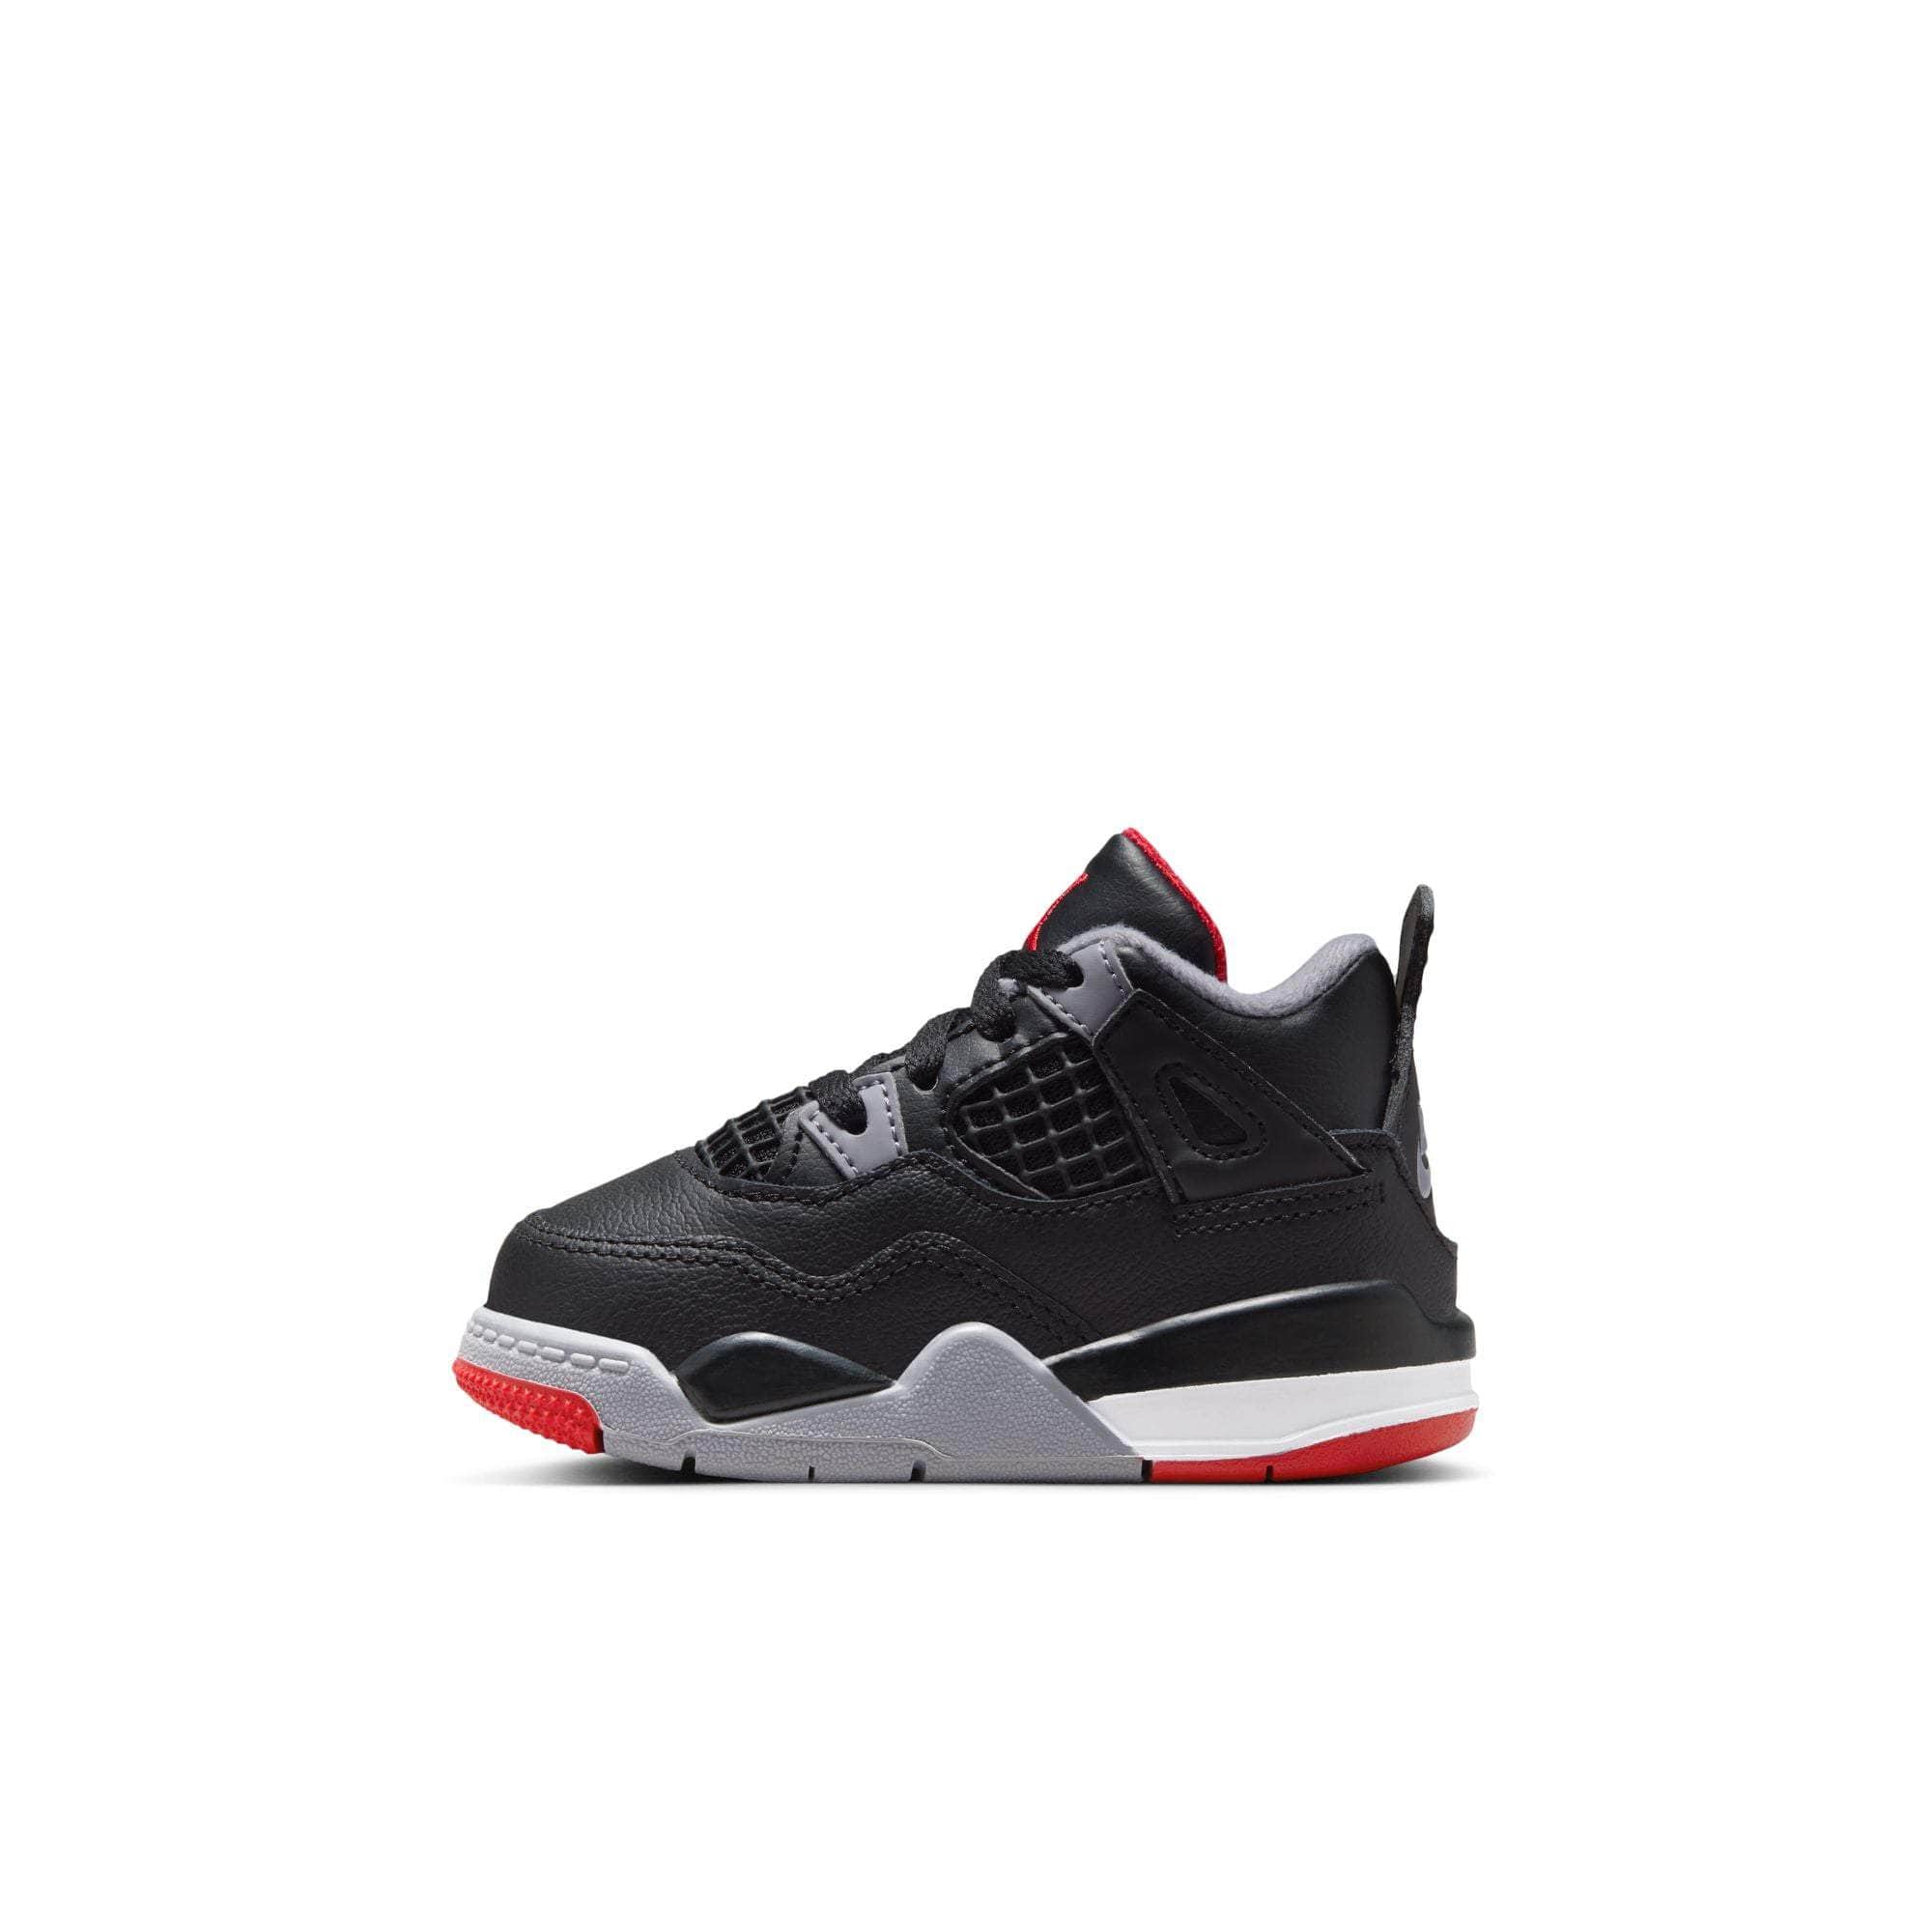 Air Jordan Footwear Air Jordan 4 Retro "Bred Reimagined" - Toddler's